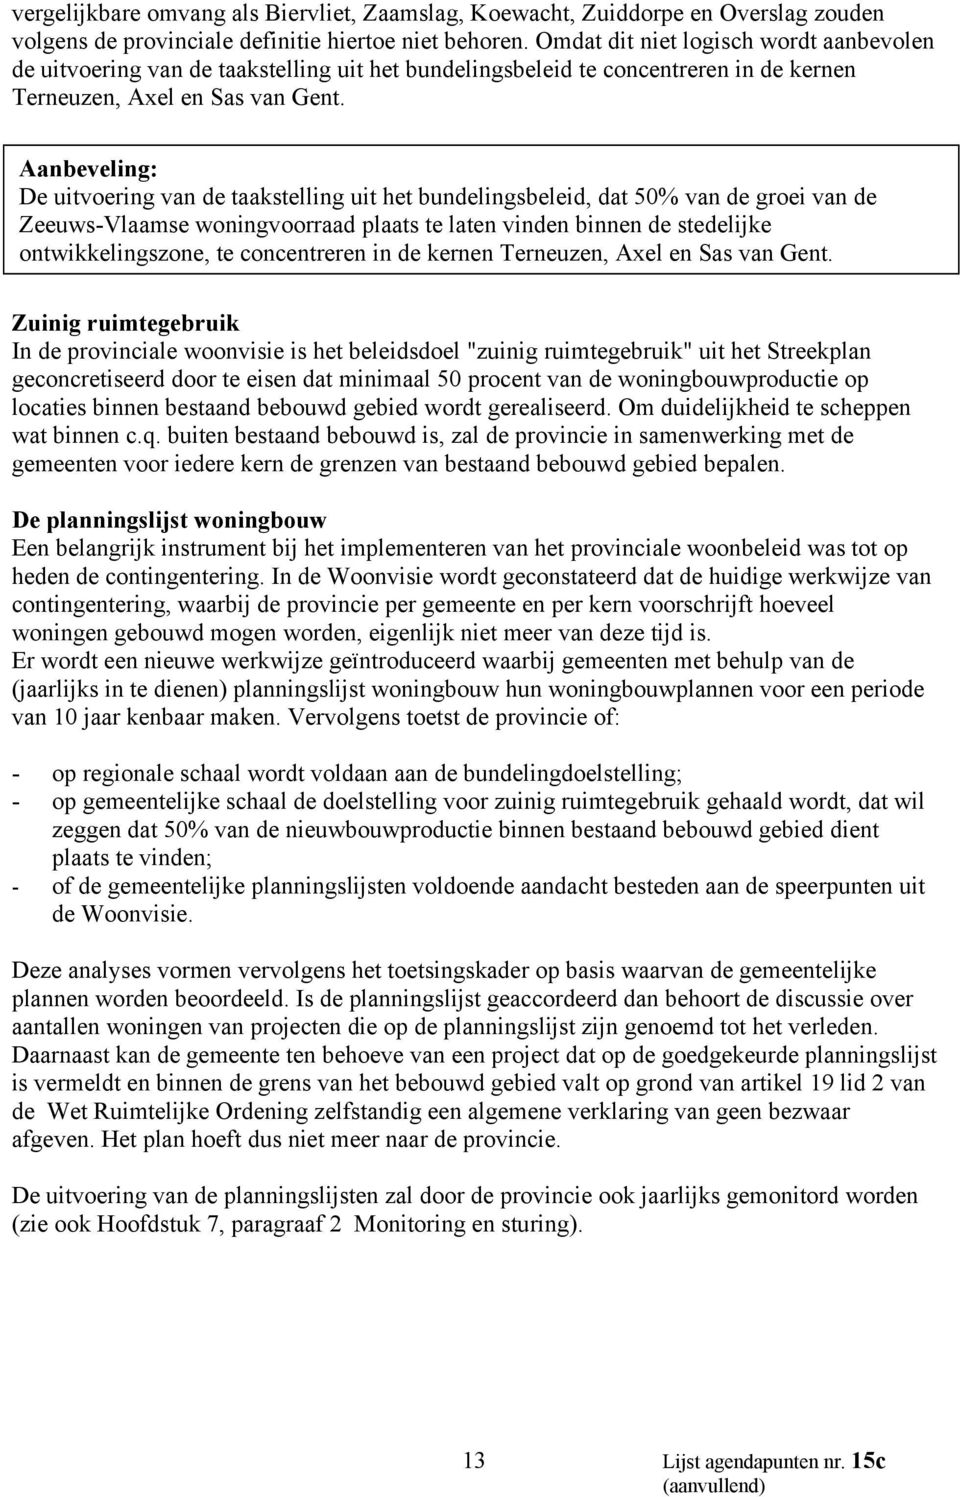 Aanbeveling: De uitvoering van de taakstelling uit het bundelingsbeleid, dat 50% van de groei van de Zeeuws-Vlaamse woningvoorraad plaats te laten vinden binnen de stedelijke ontwikkelingszone, te